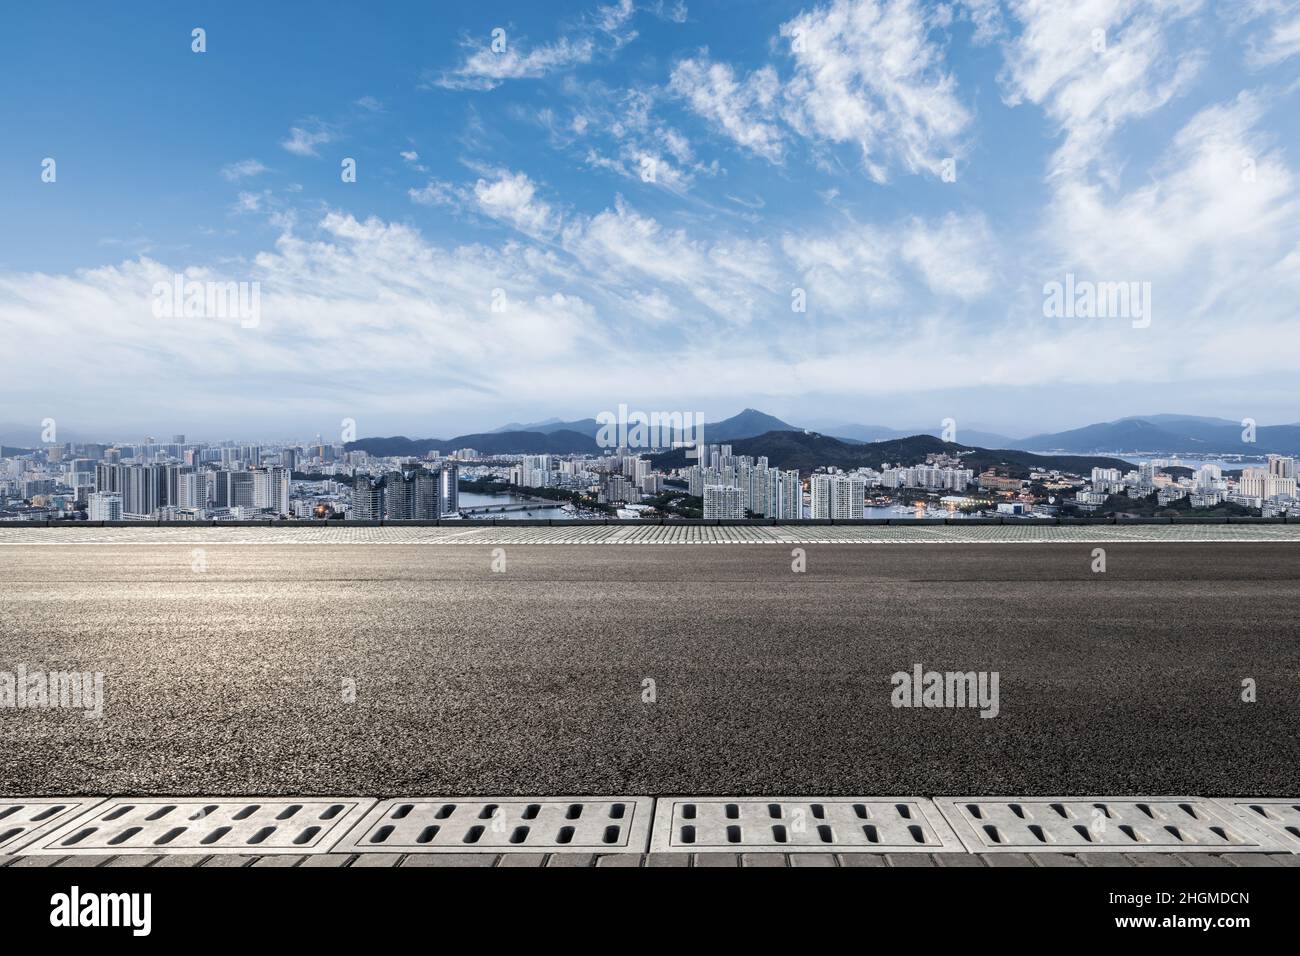 Carretera asfaltada y horizonte urbano moderno con edificios Foto de stock